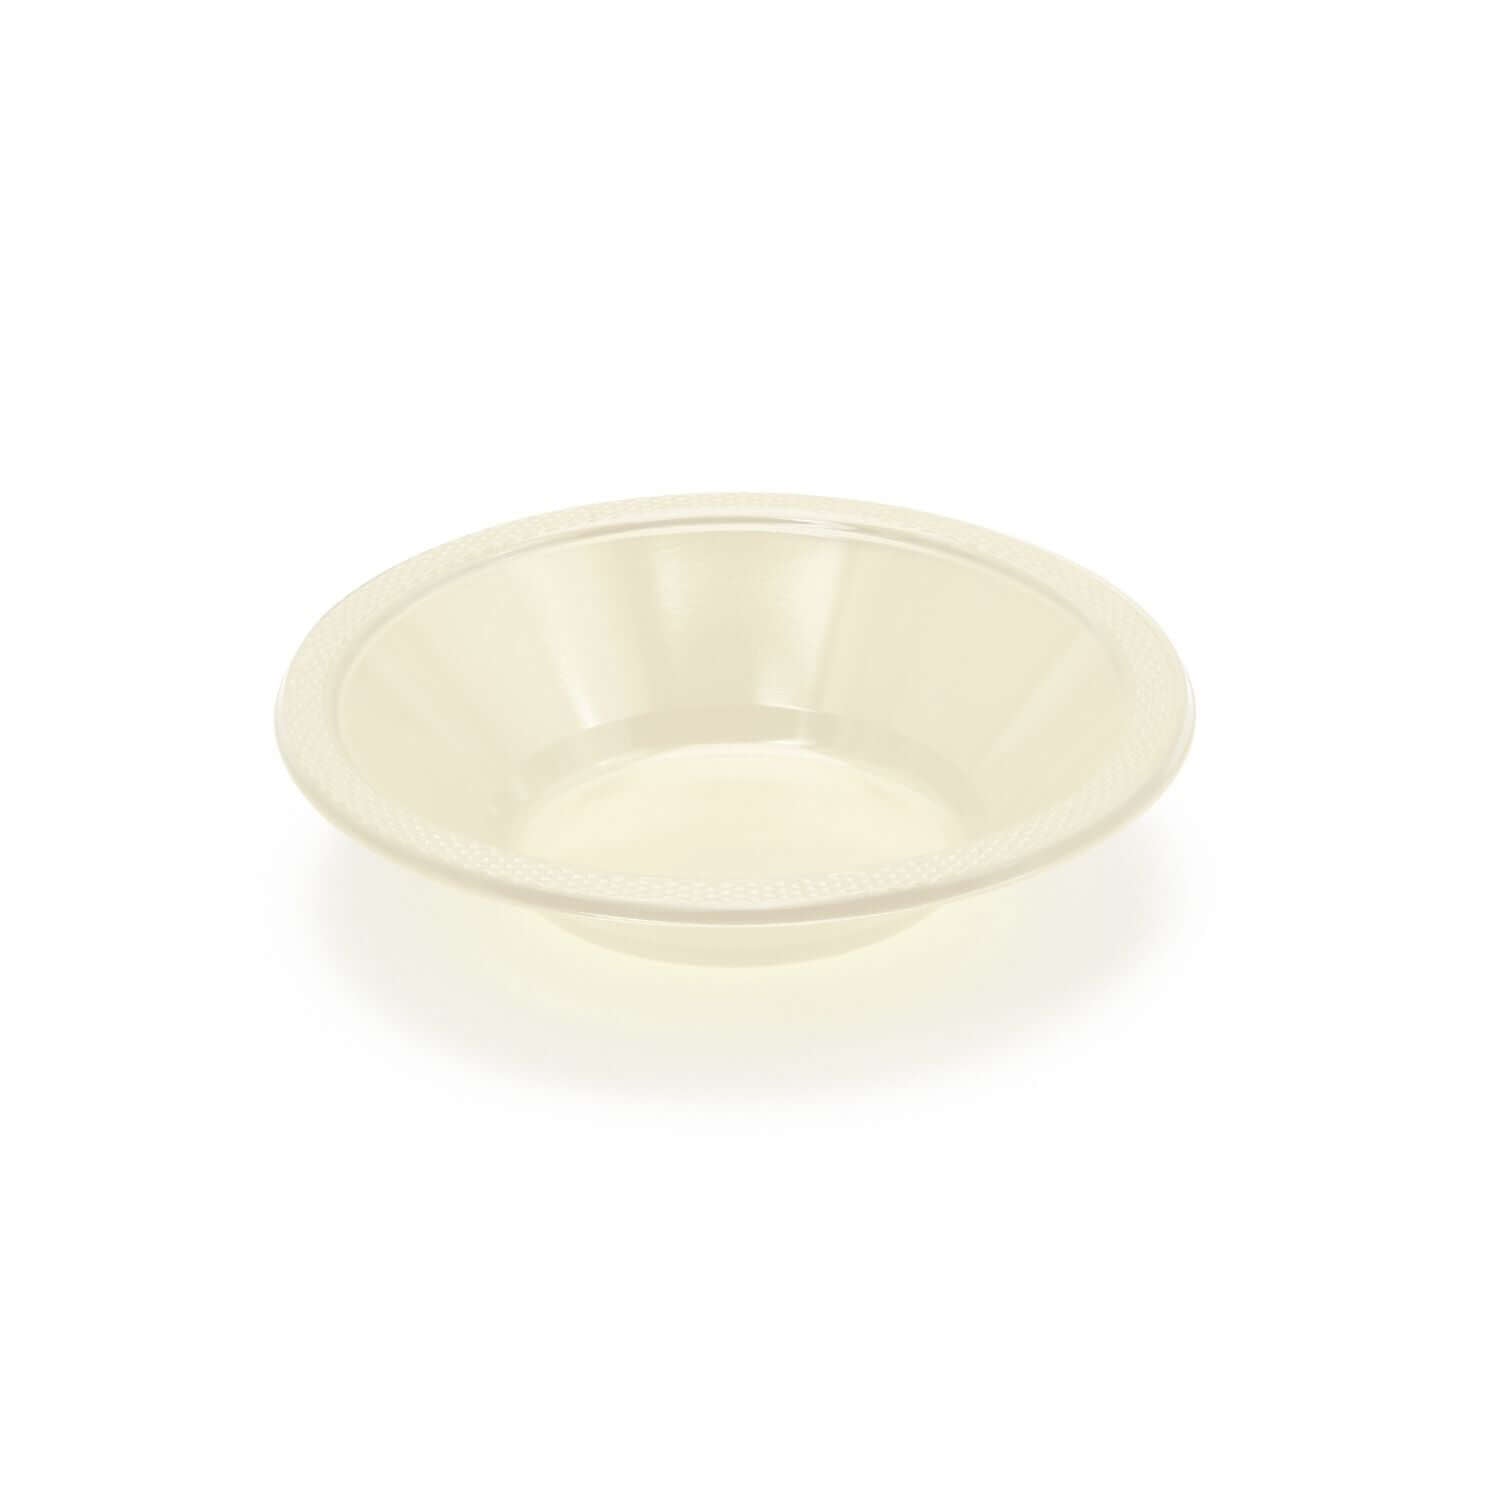 12 Oz. Ivory Plastic Bowls | 600 Count - Yom Tov Settings